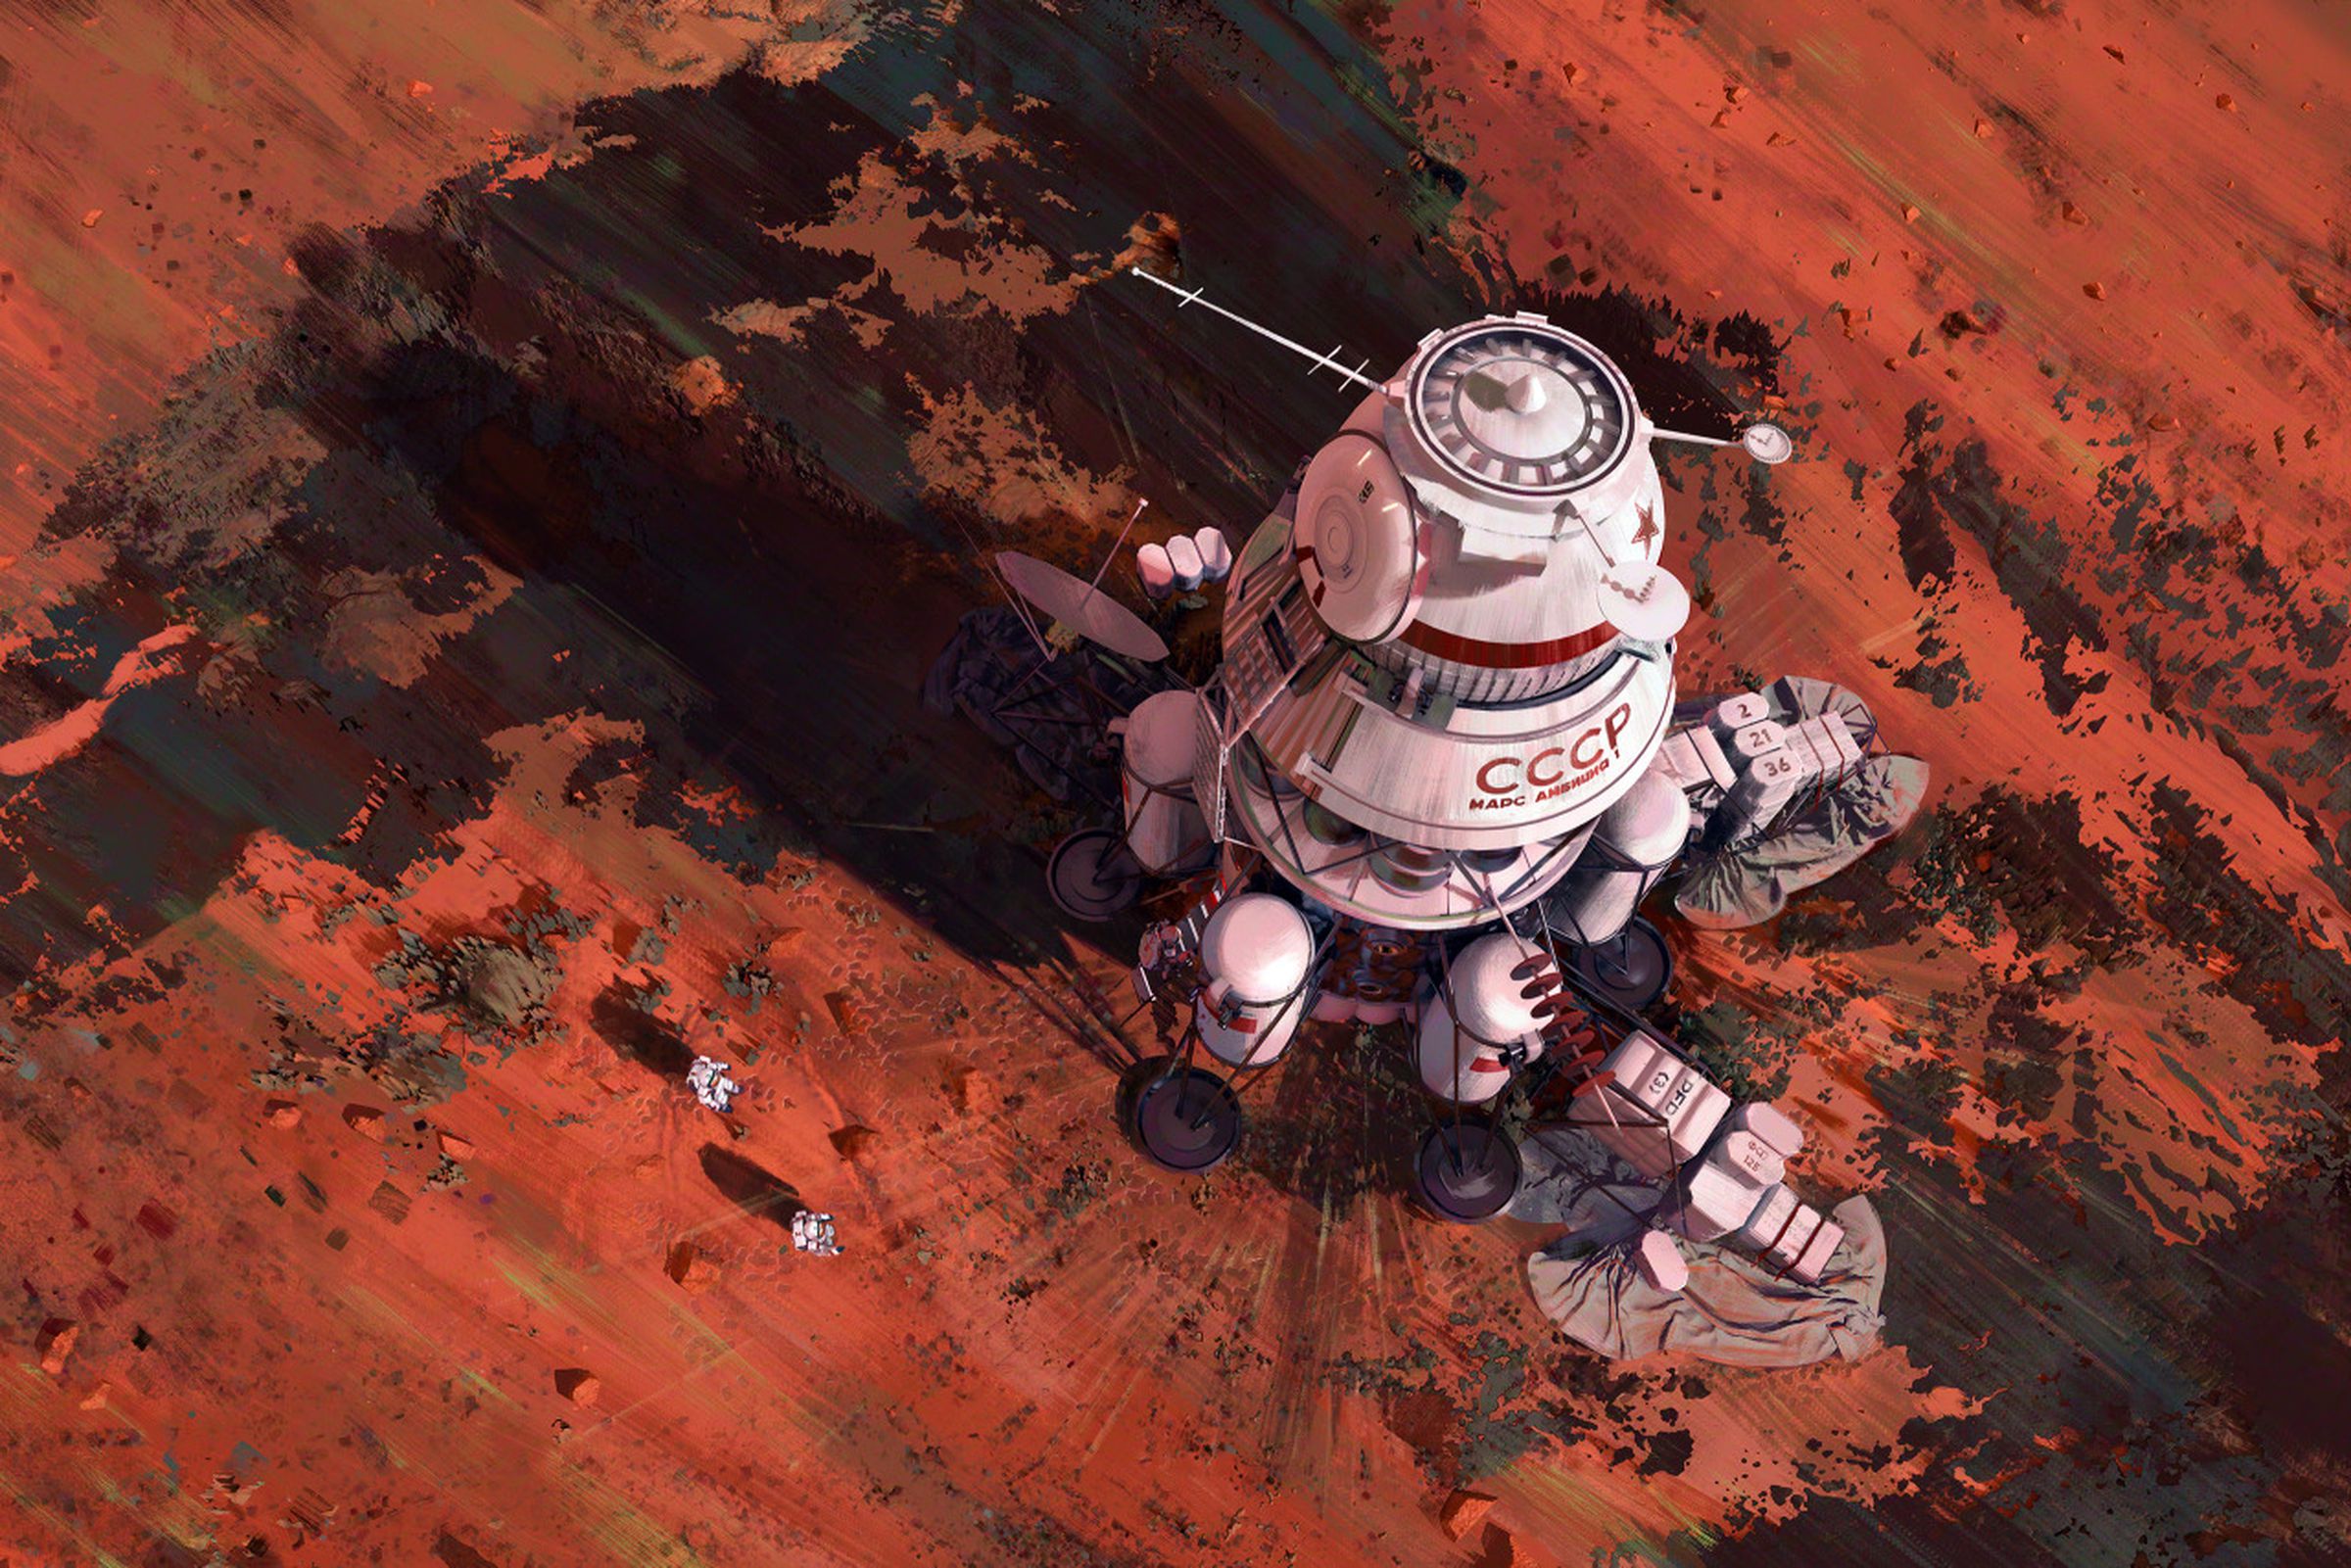 Soviet lander “Ambition 1” landed on Mars.